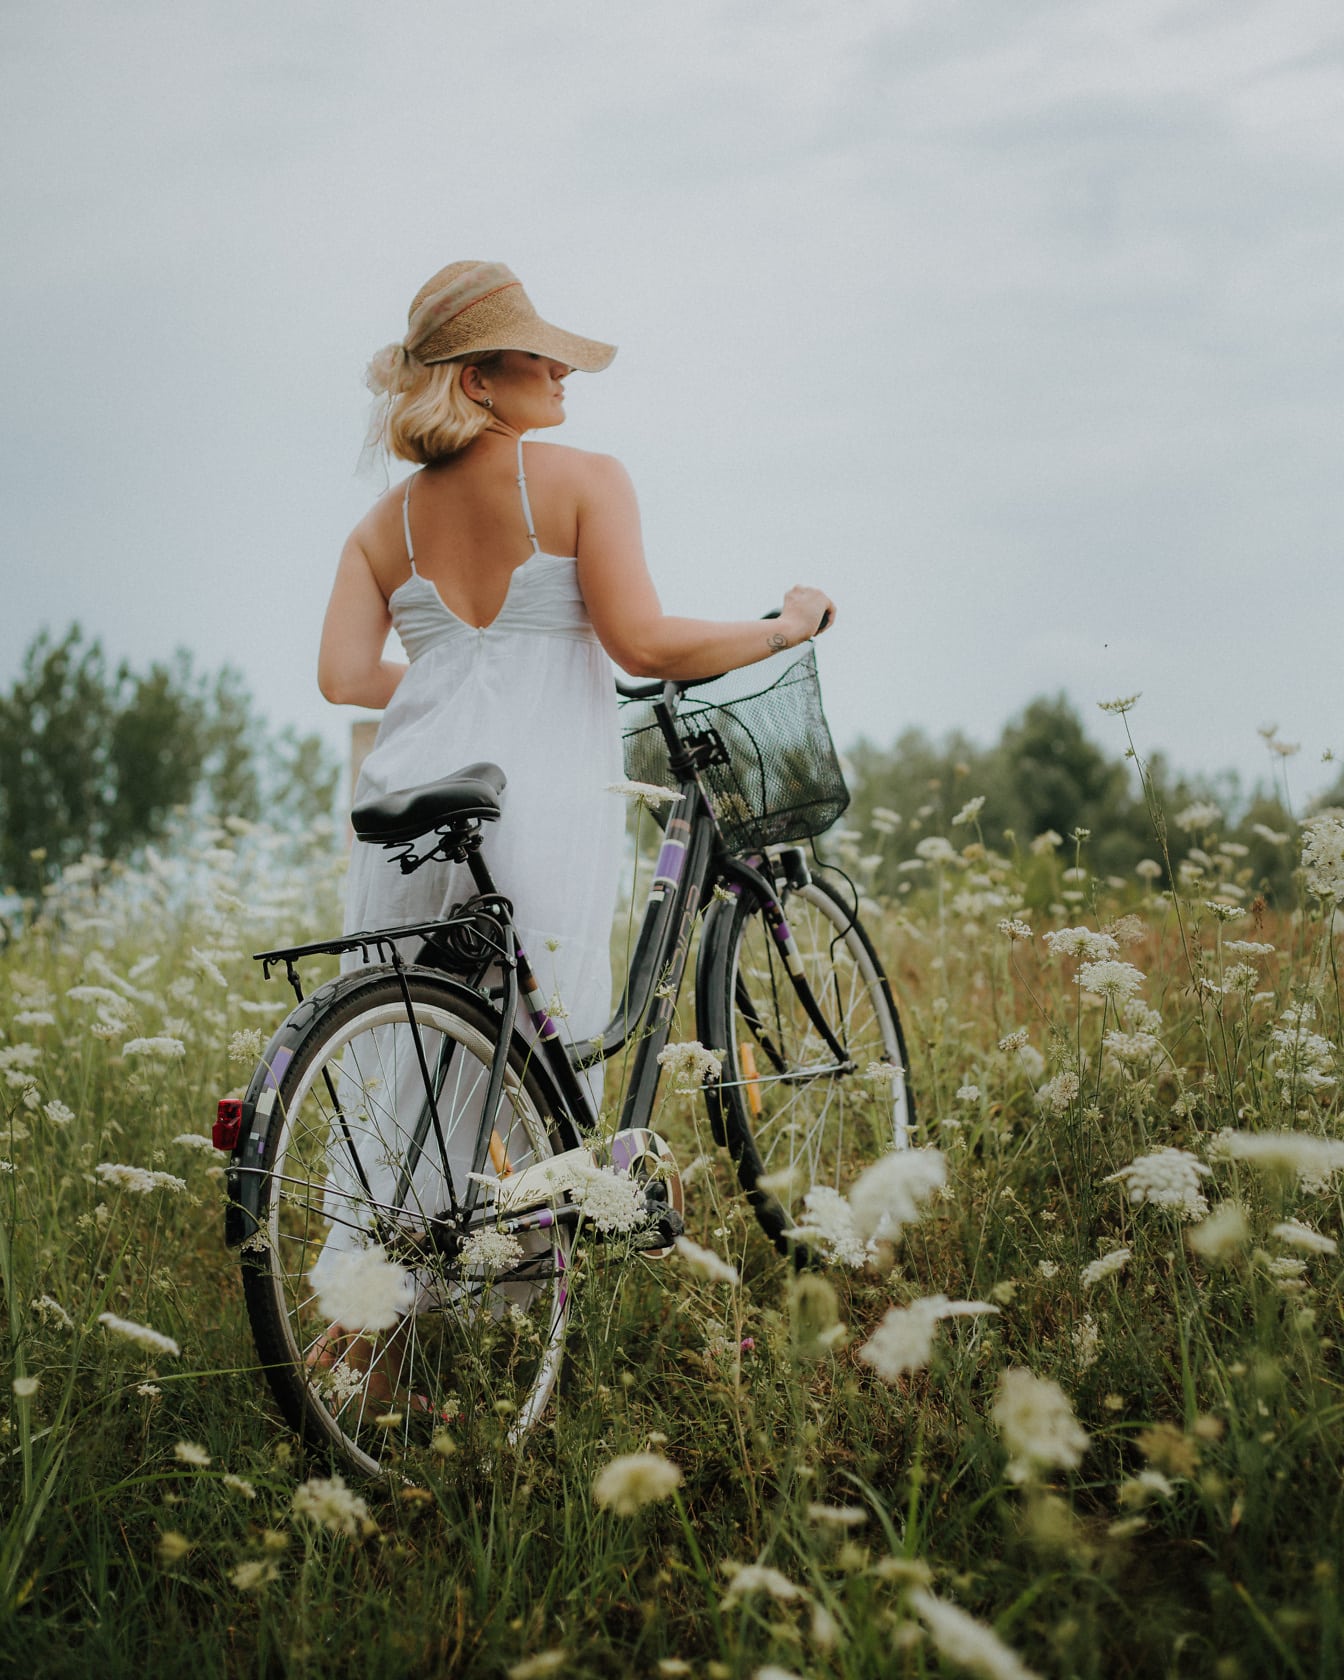 Nő fehér hát nélküli ruhában és kalapban, fekete kerékpárral egy vadvirágos mezőn